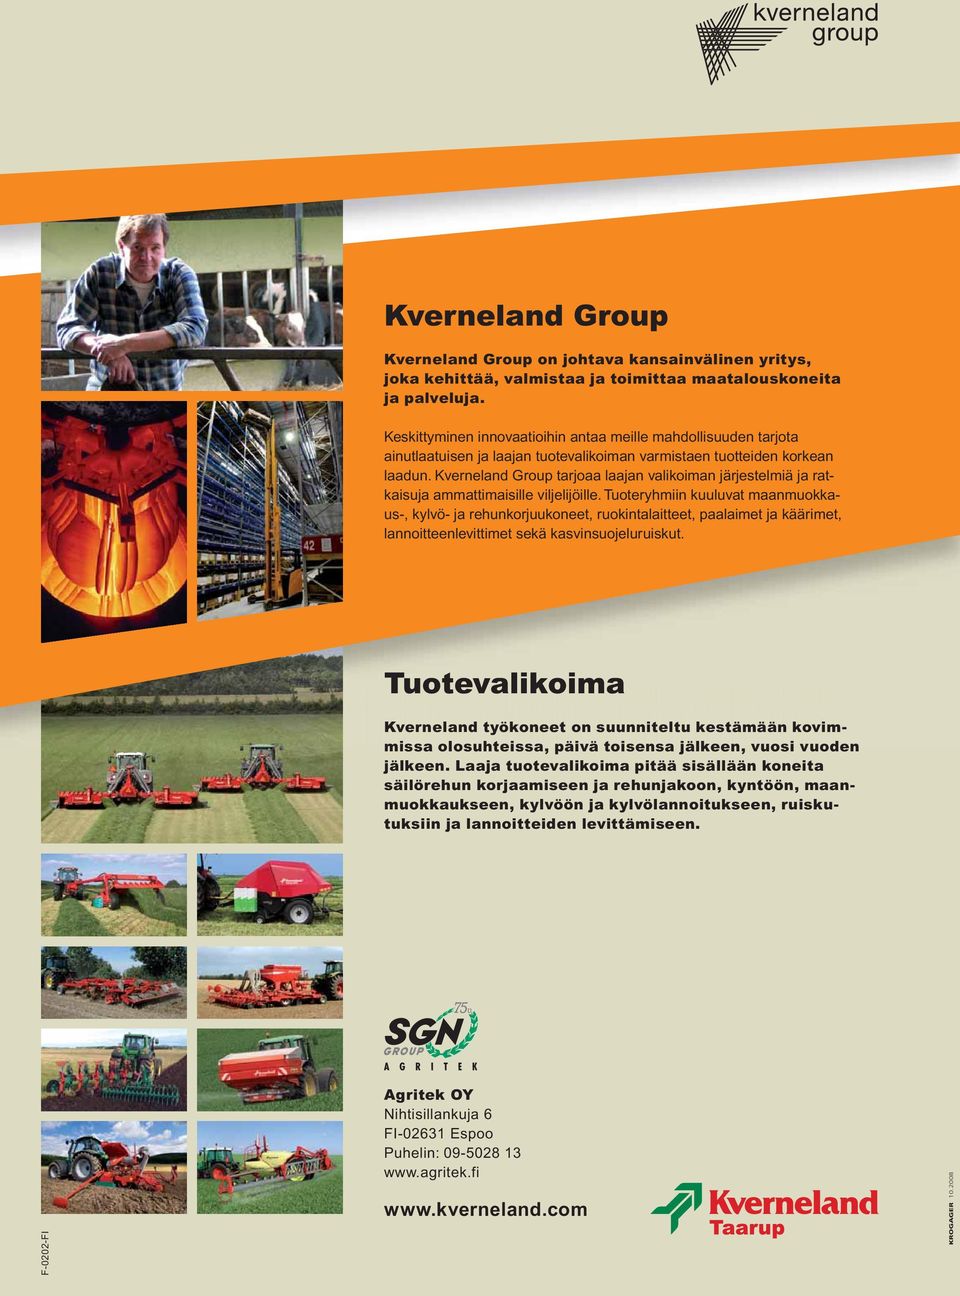 Kverneland Group tarjoaa laajan valikoiman järjestelmiä ja ratkaisuja ammattimaisille viljelijöille.